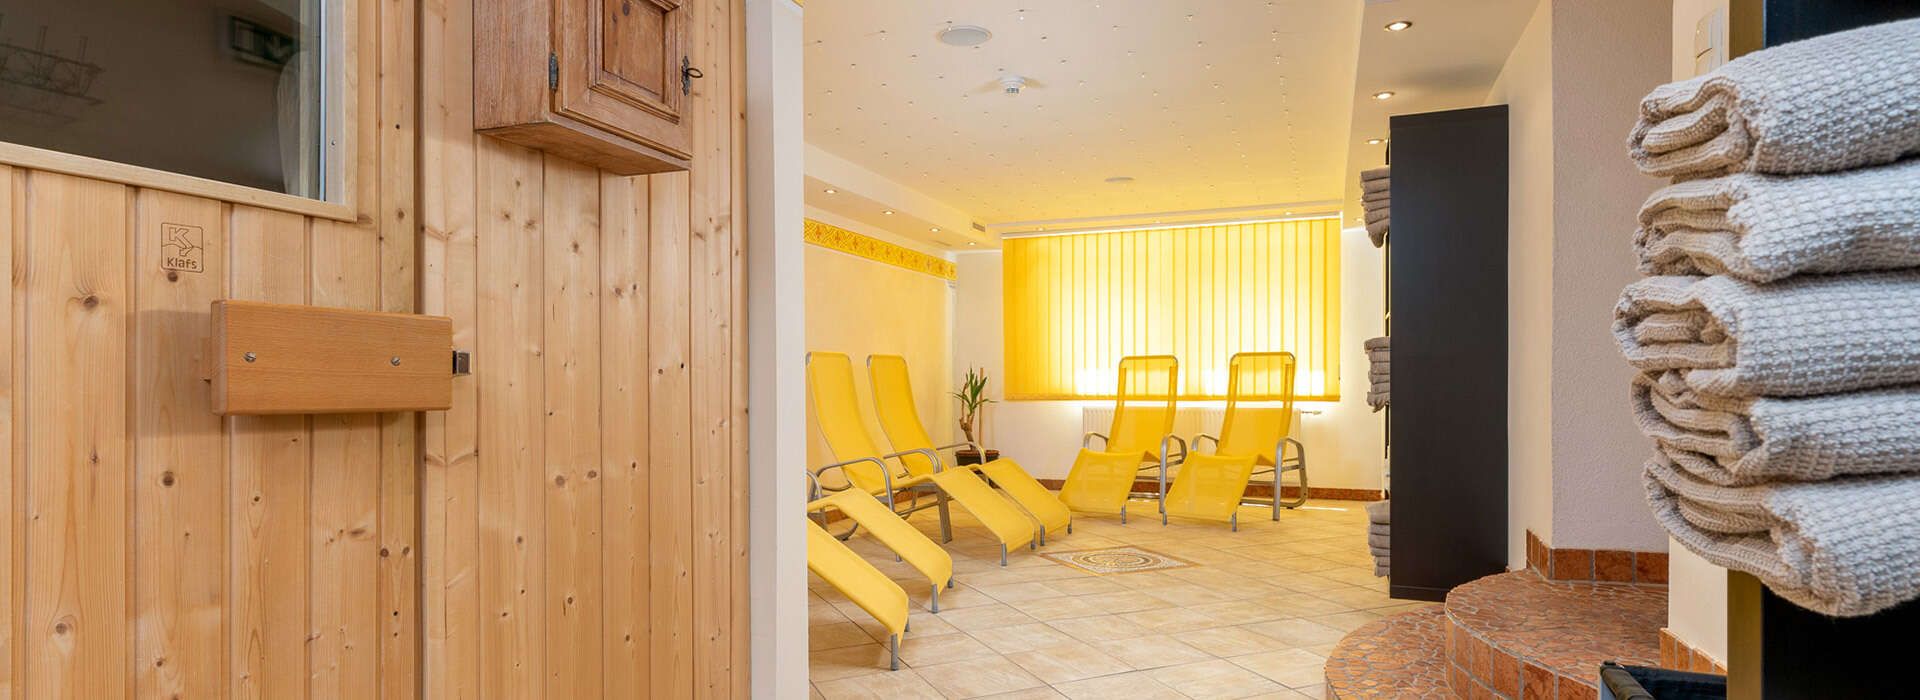 Ruheraum mit Sauna im Hotel Schlossberg Tirol